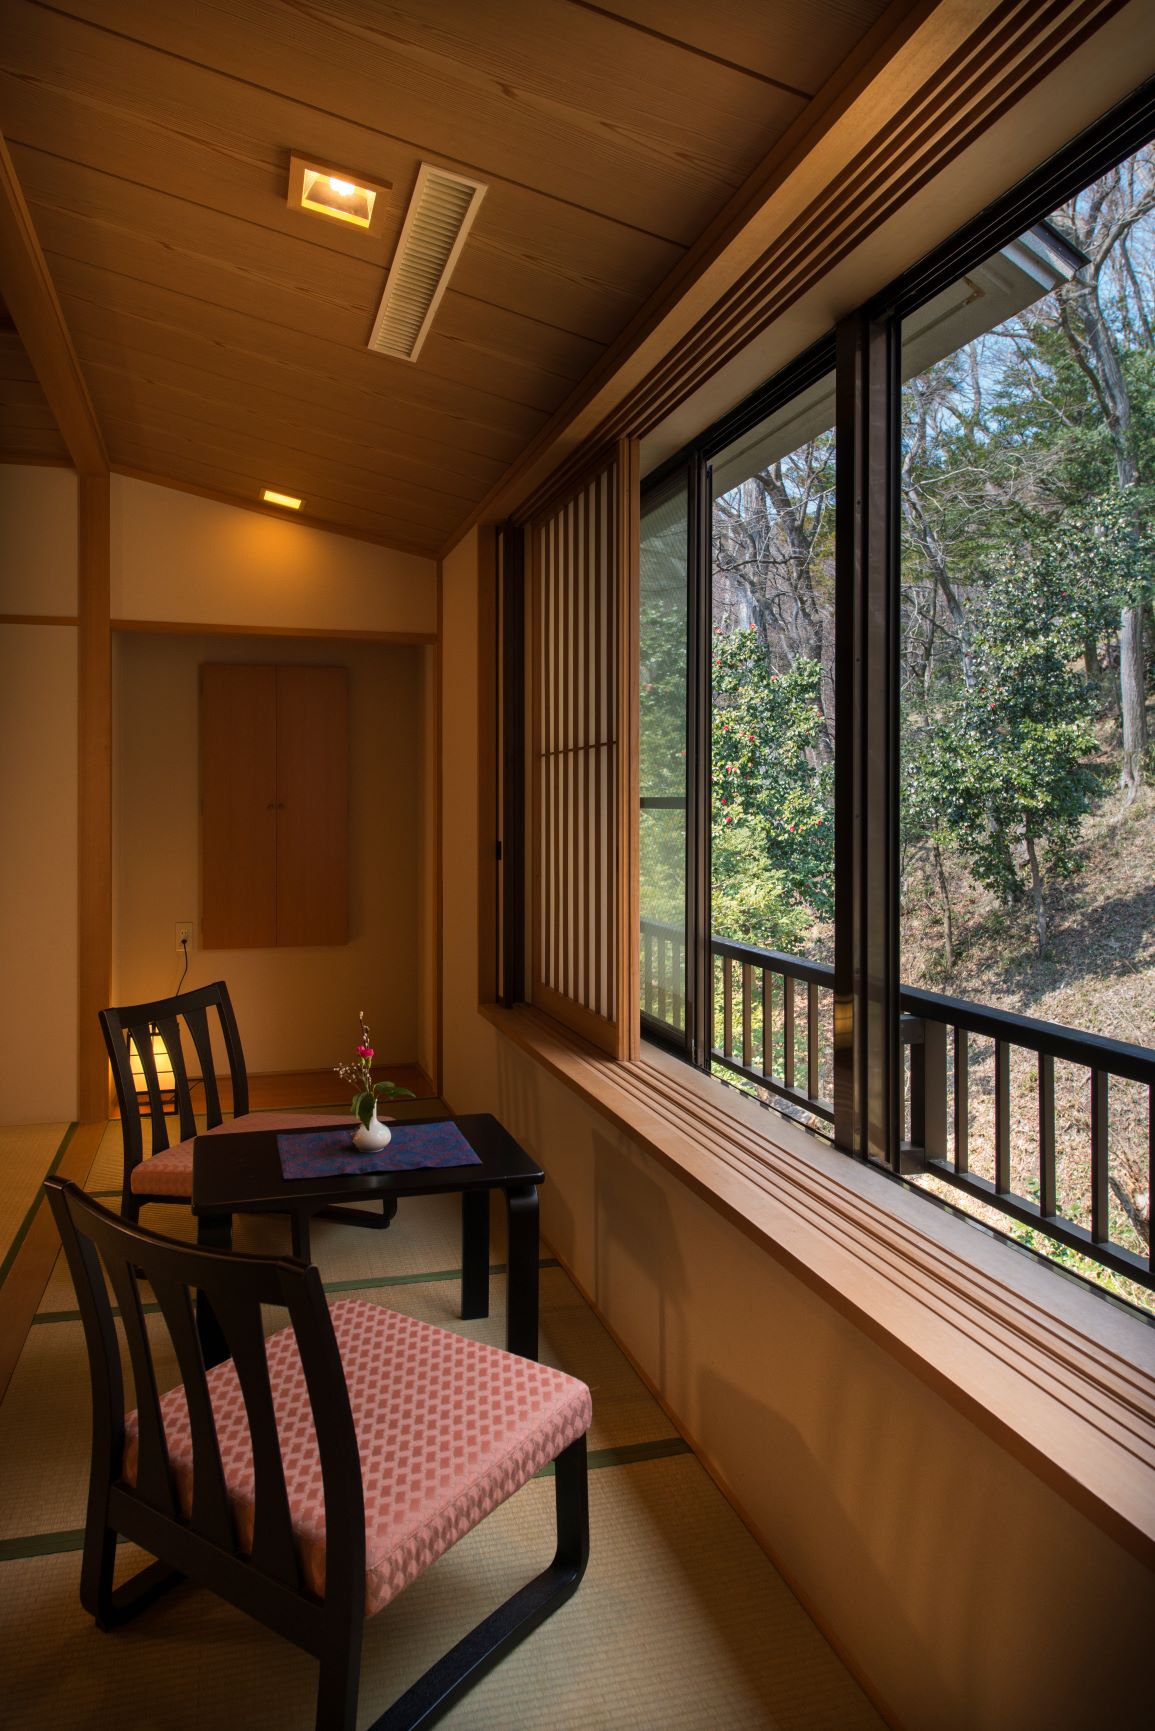 【東館一例】裏山の景色を眺めながら読書を楽しむのもオススメ。窓の外には可愛いリスが訪れる日も♪